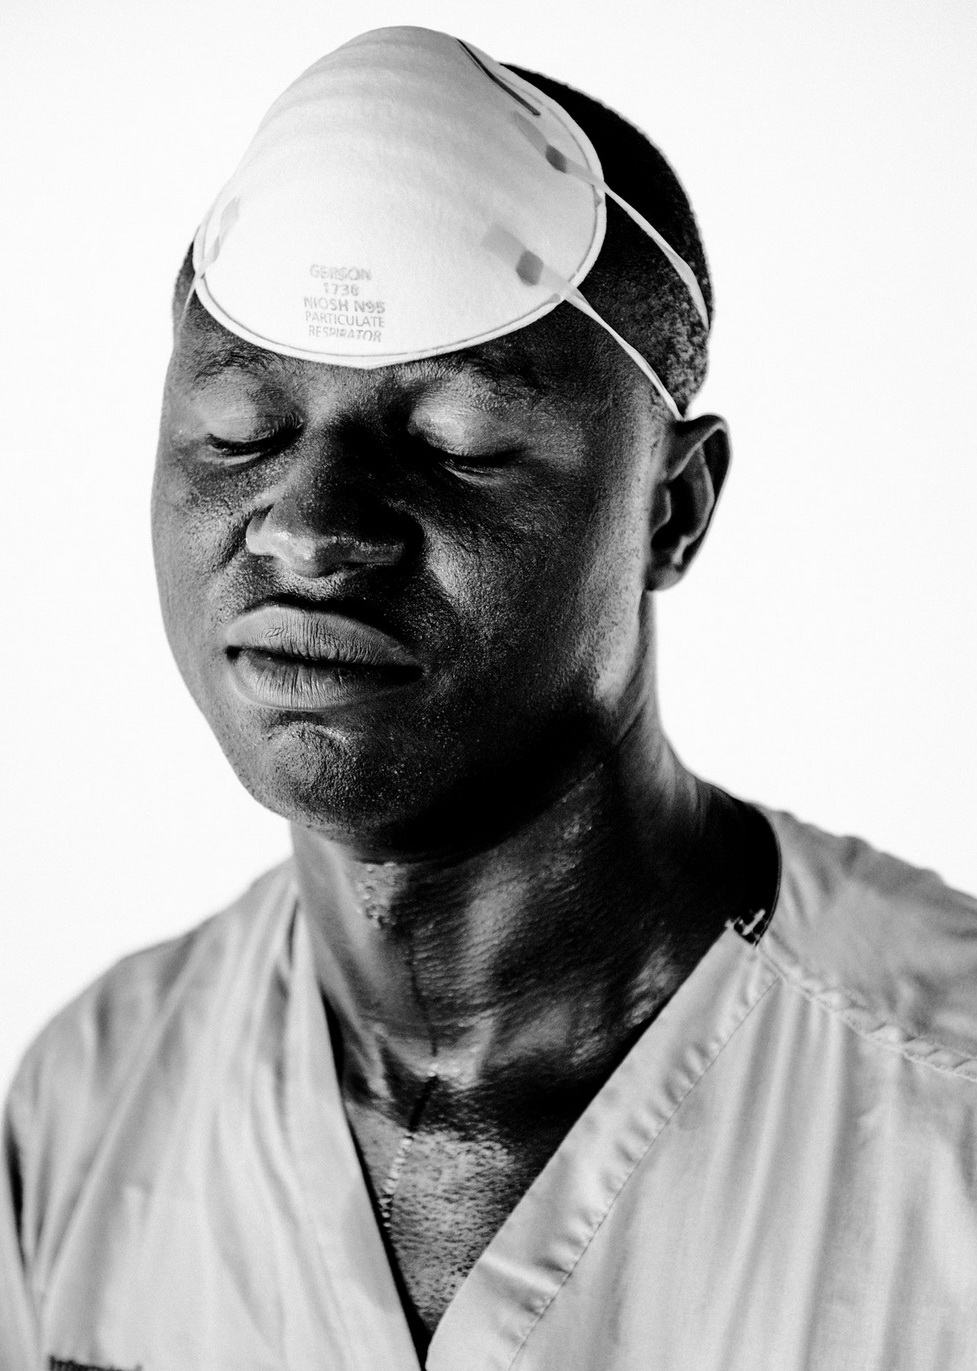   J. Sam T. G. Siakor, 30, water, sanitation and hygiene supervisor. October 2014 © Daniel Berehulak for The New York Times  